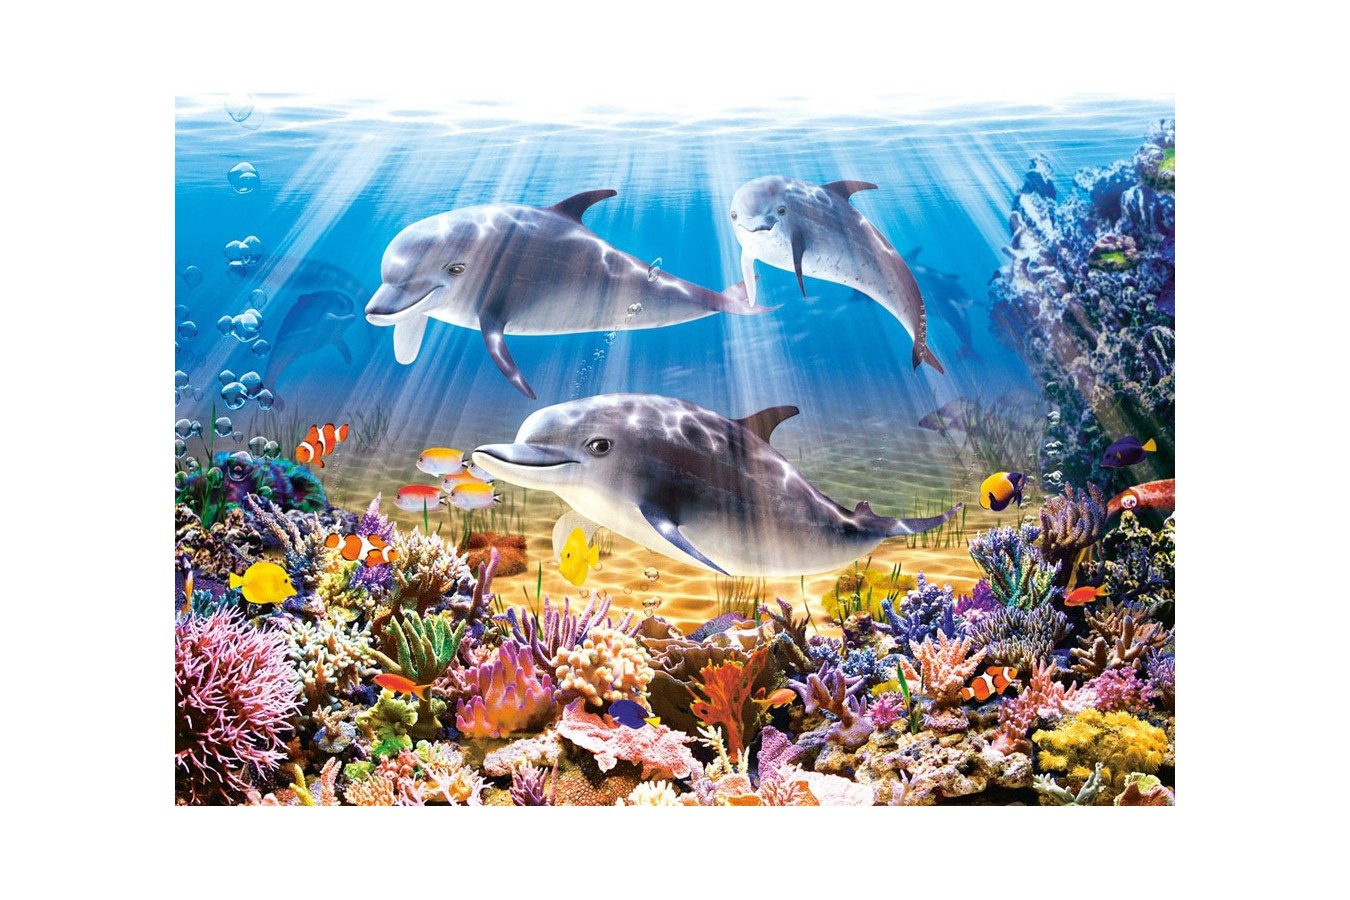 Puzzle Castorland - Doplhins Underwater, 500 piese